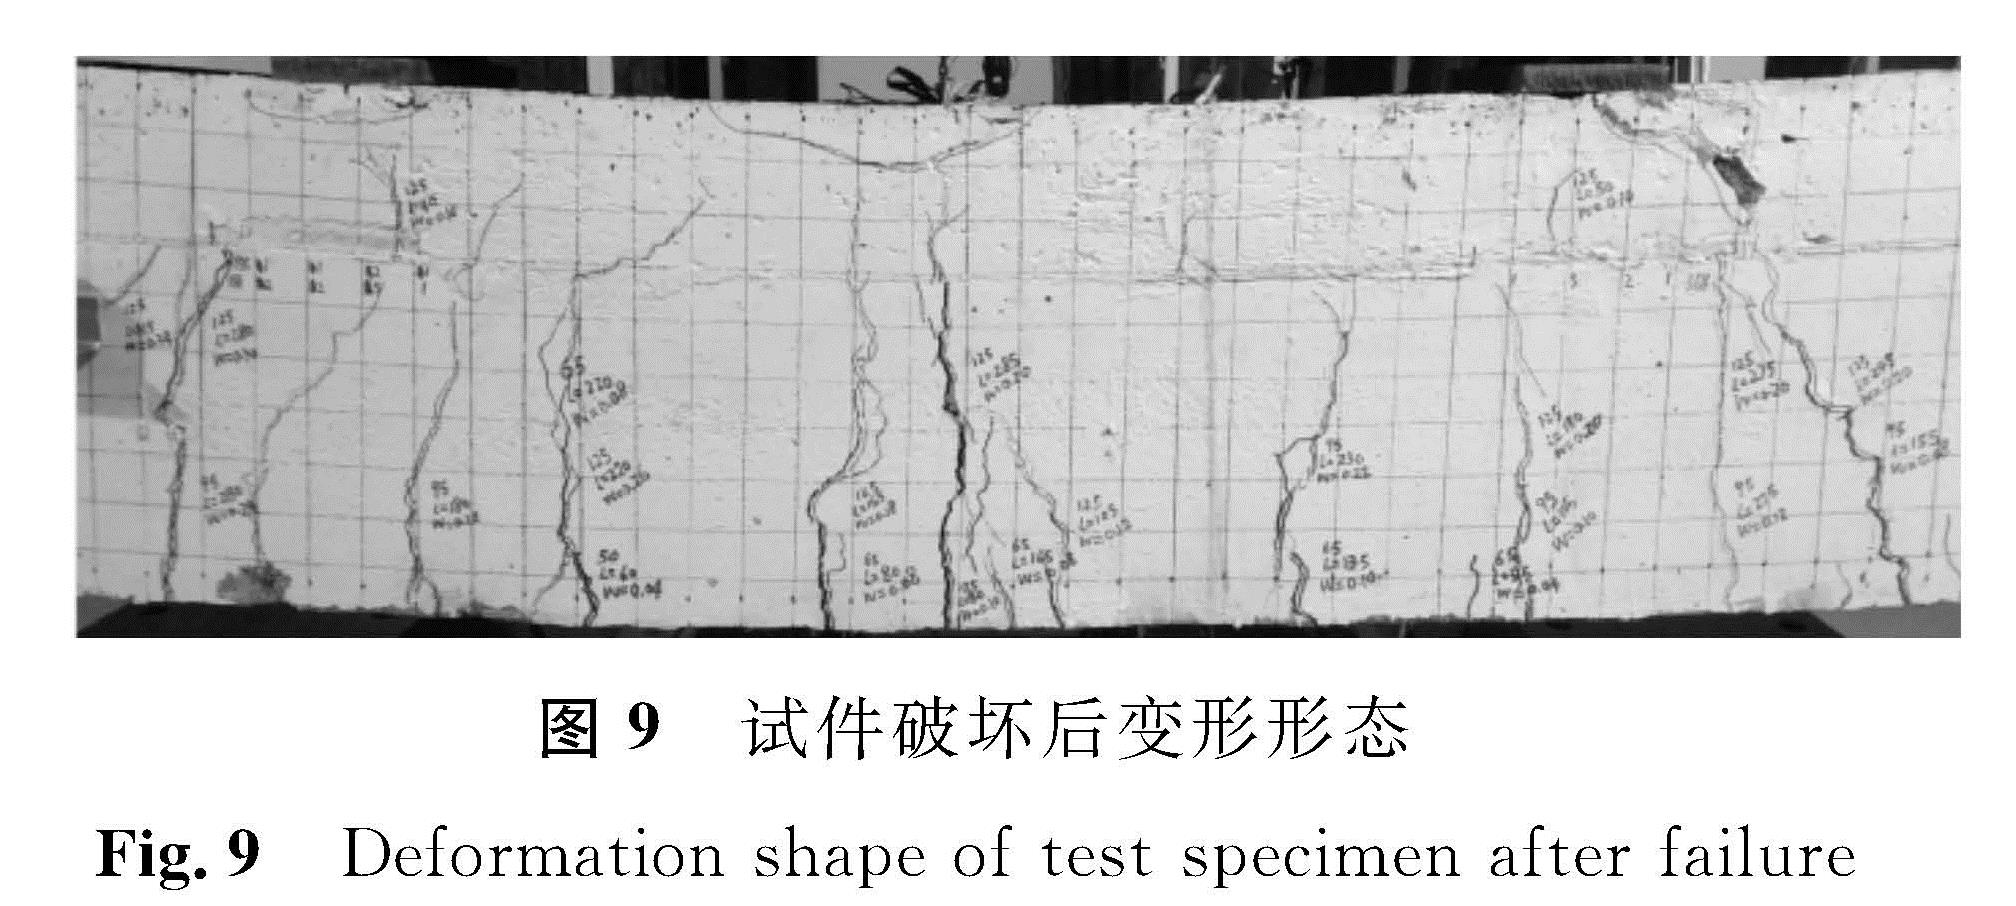 图9 试件破坏后变形形态<br/>Fig.9 Deformation shape of test specimen after failure